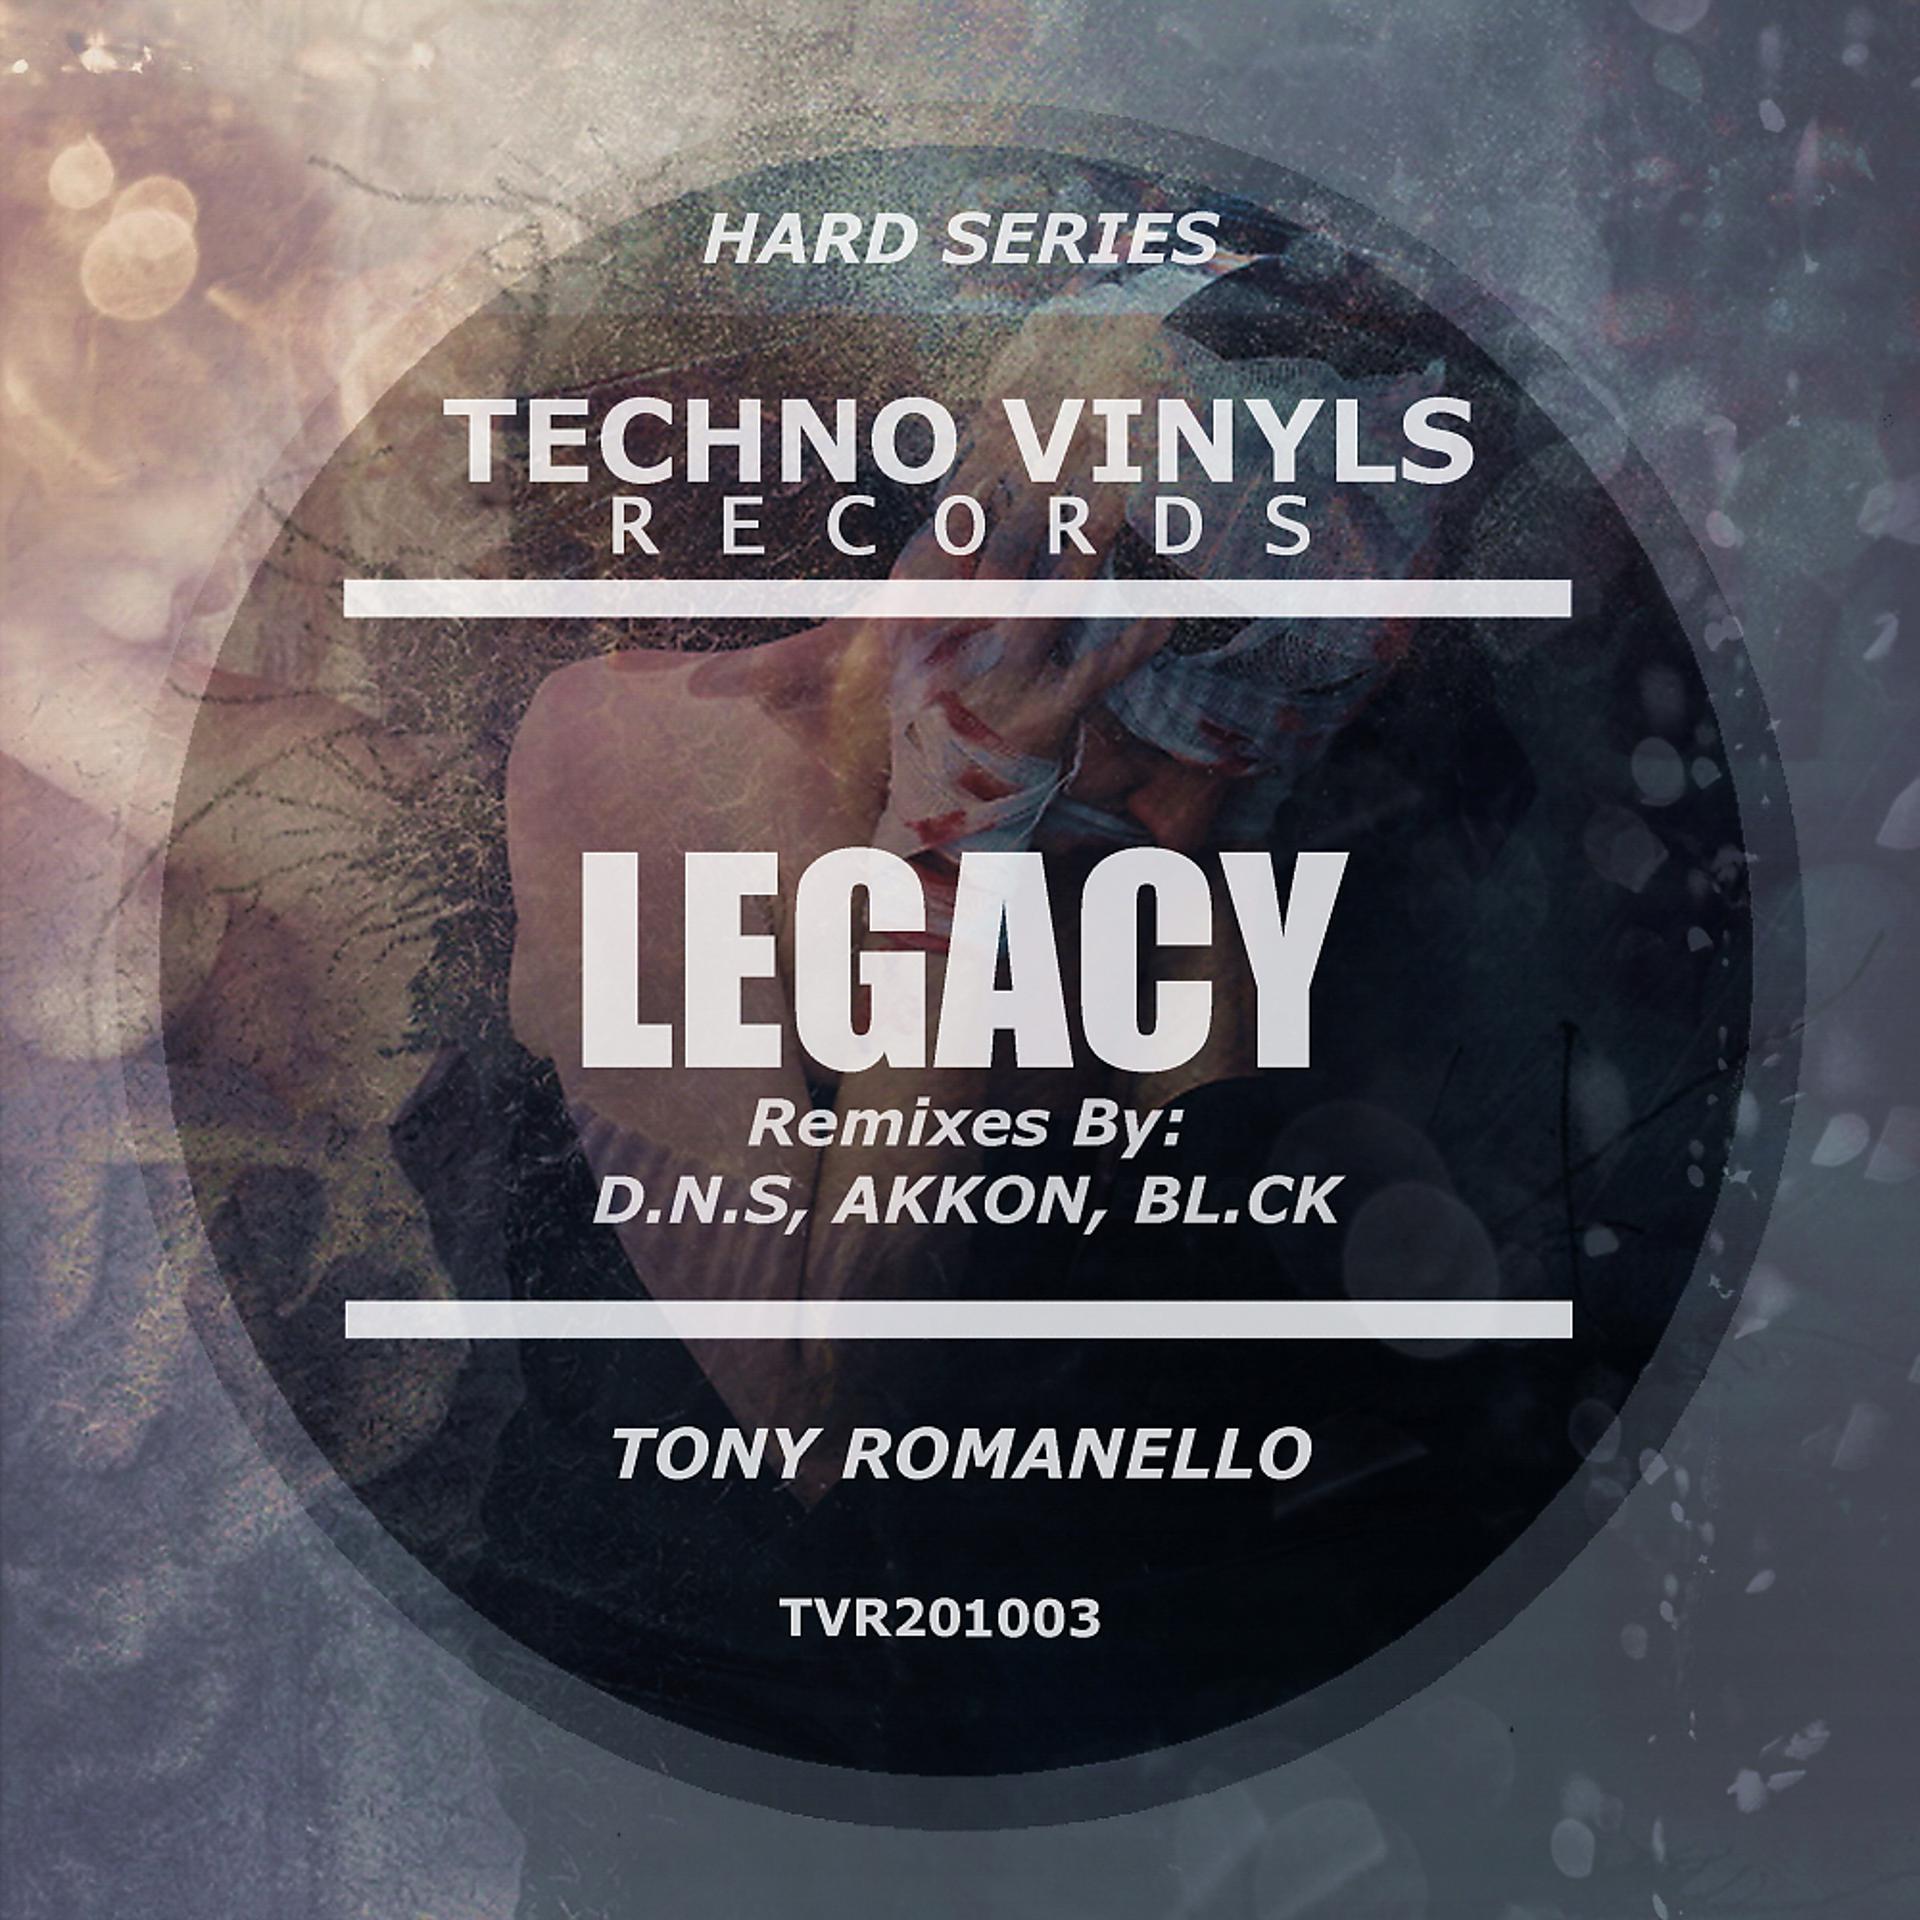 Tone remix. Tony Romanello. Романелло.